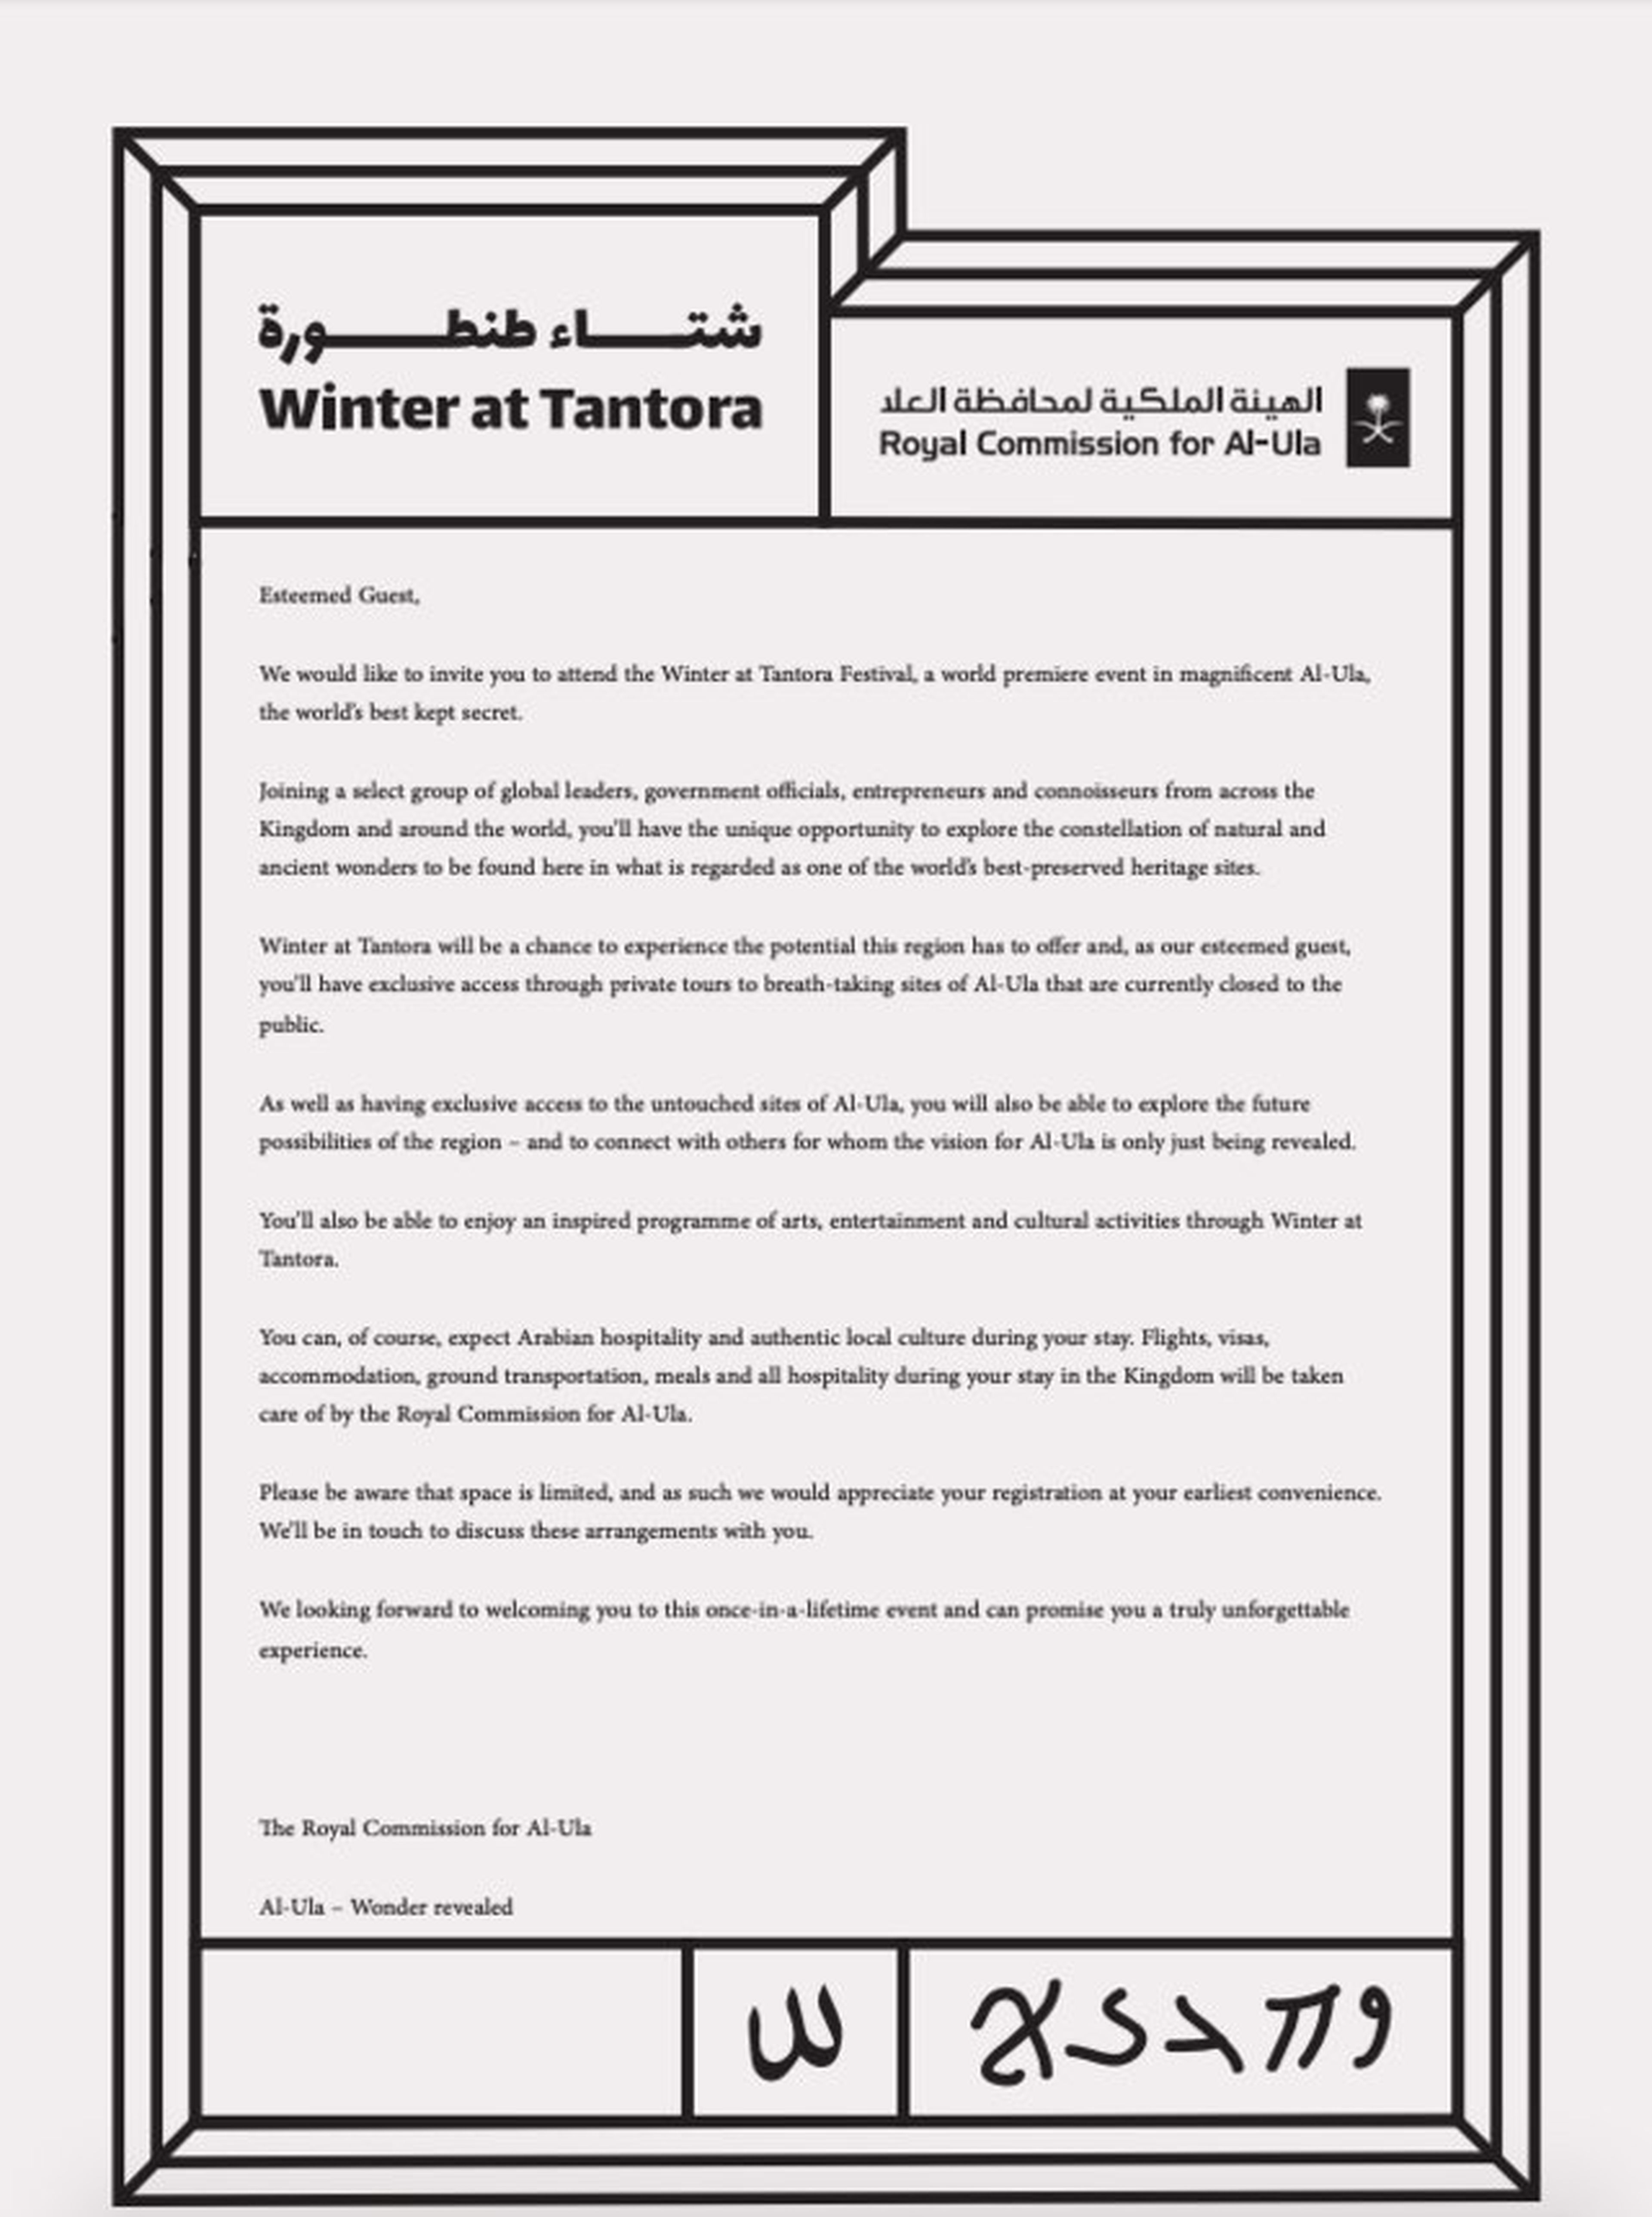 Una copia de la invitación enviada por el gobierno de Arabia Saudí a influencers para Winter at Tantora.